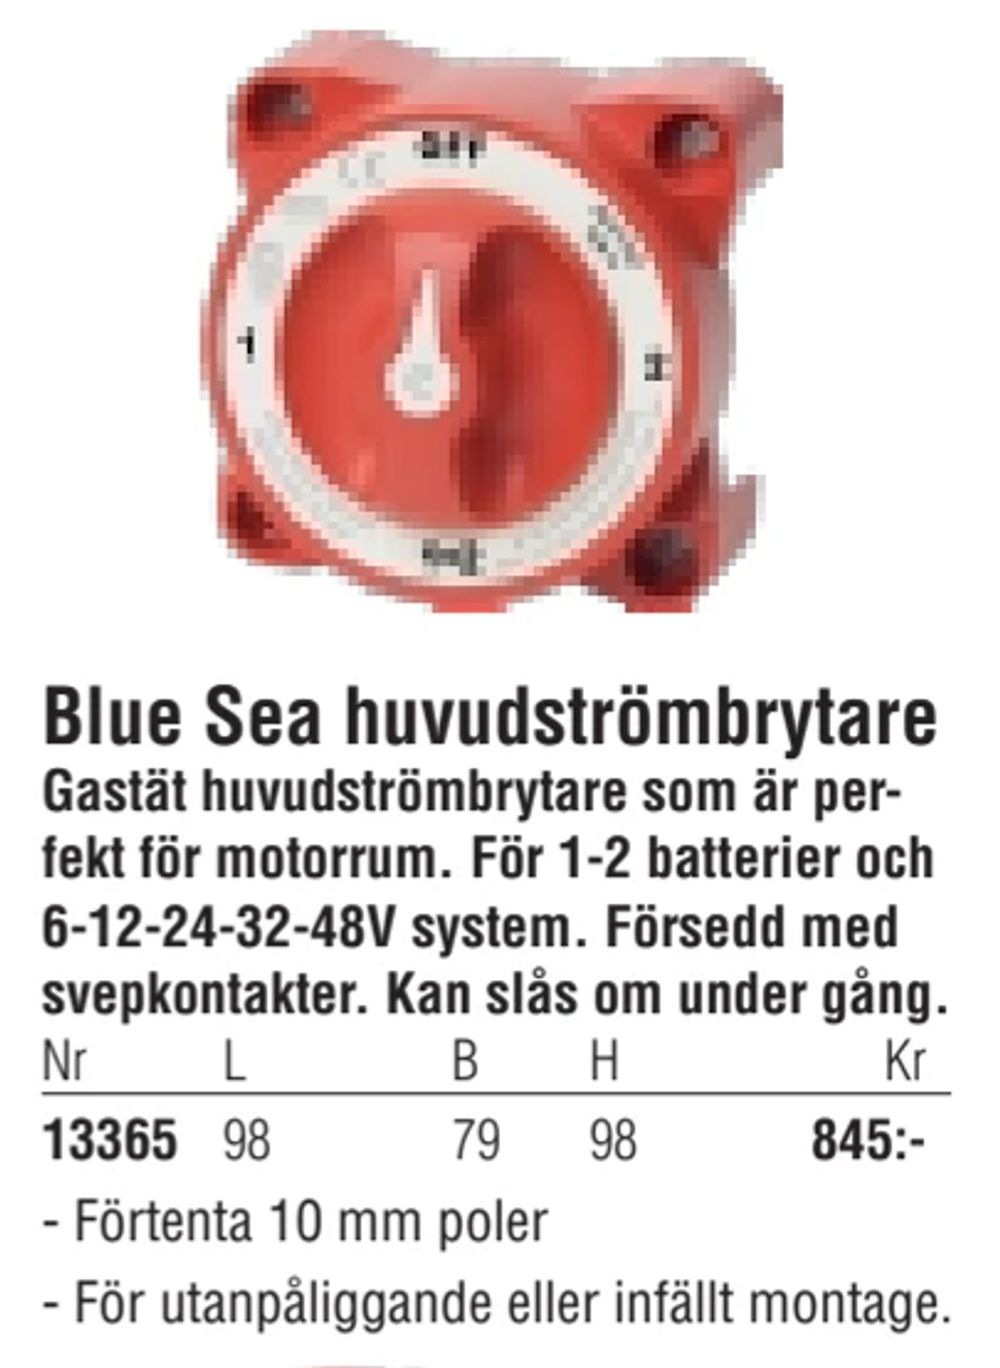 Erbjudanden på Blue Sea huvudströmbrytare från Erlandsons Brygga för 845 kr